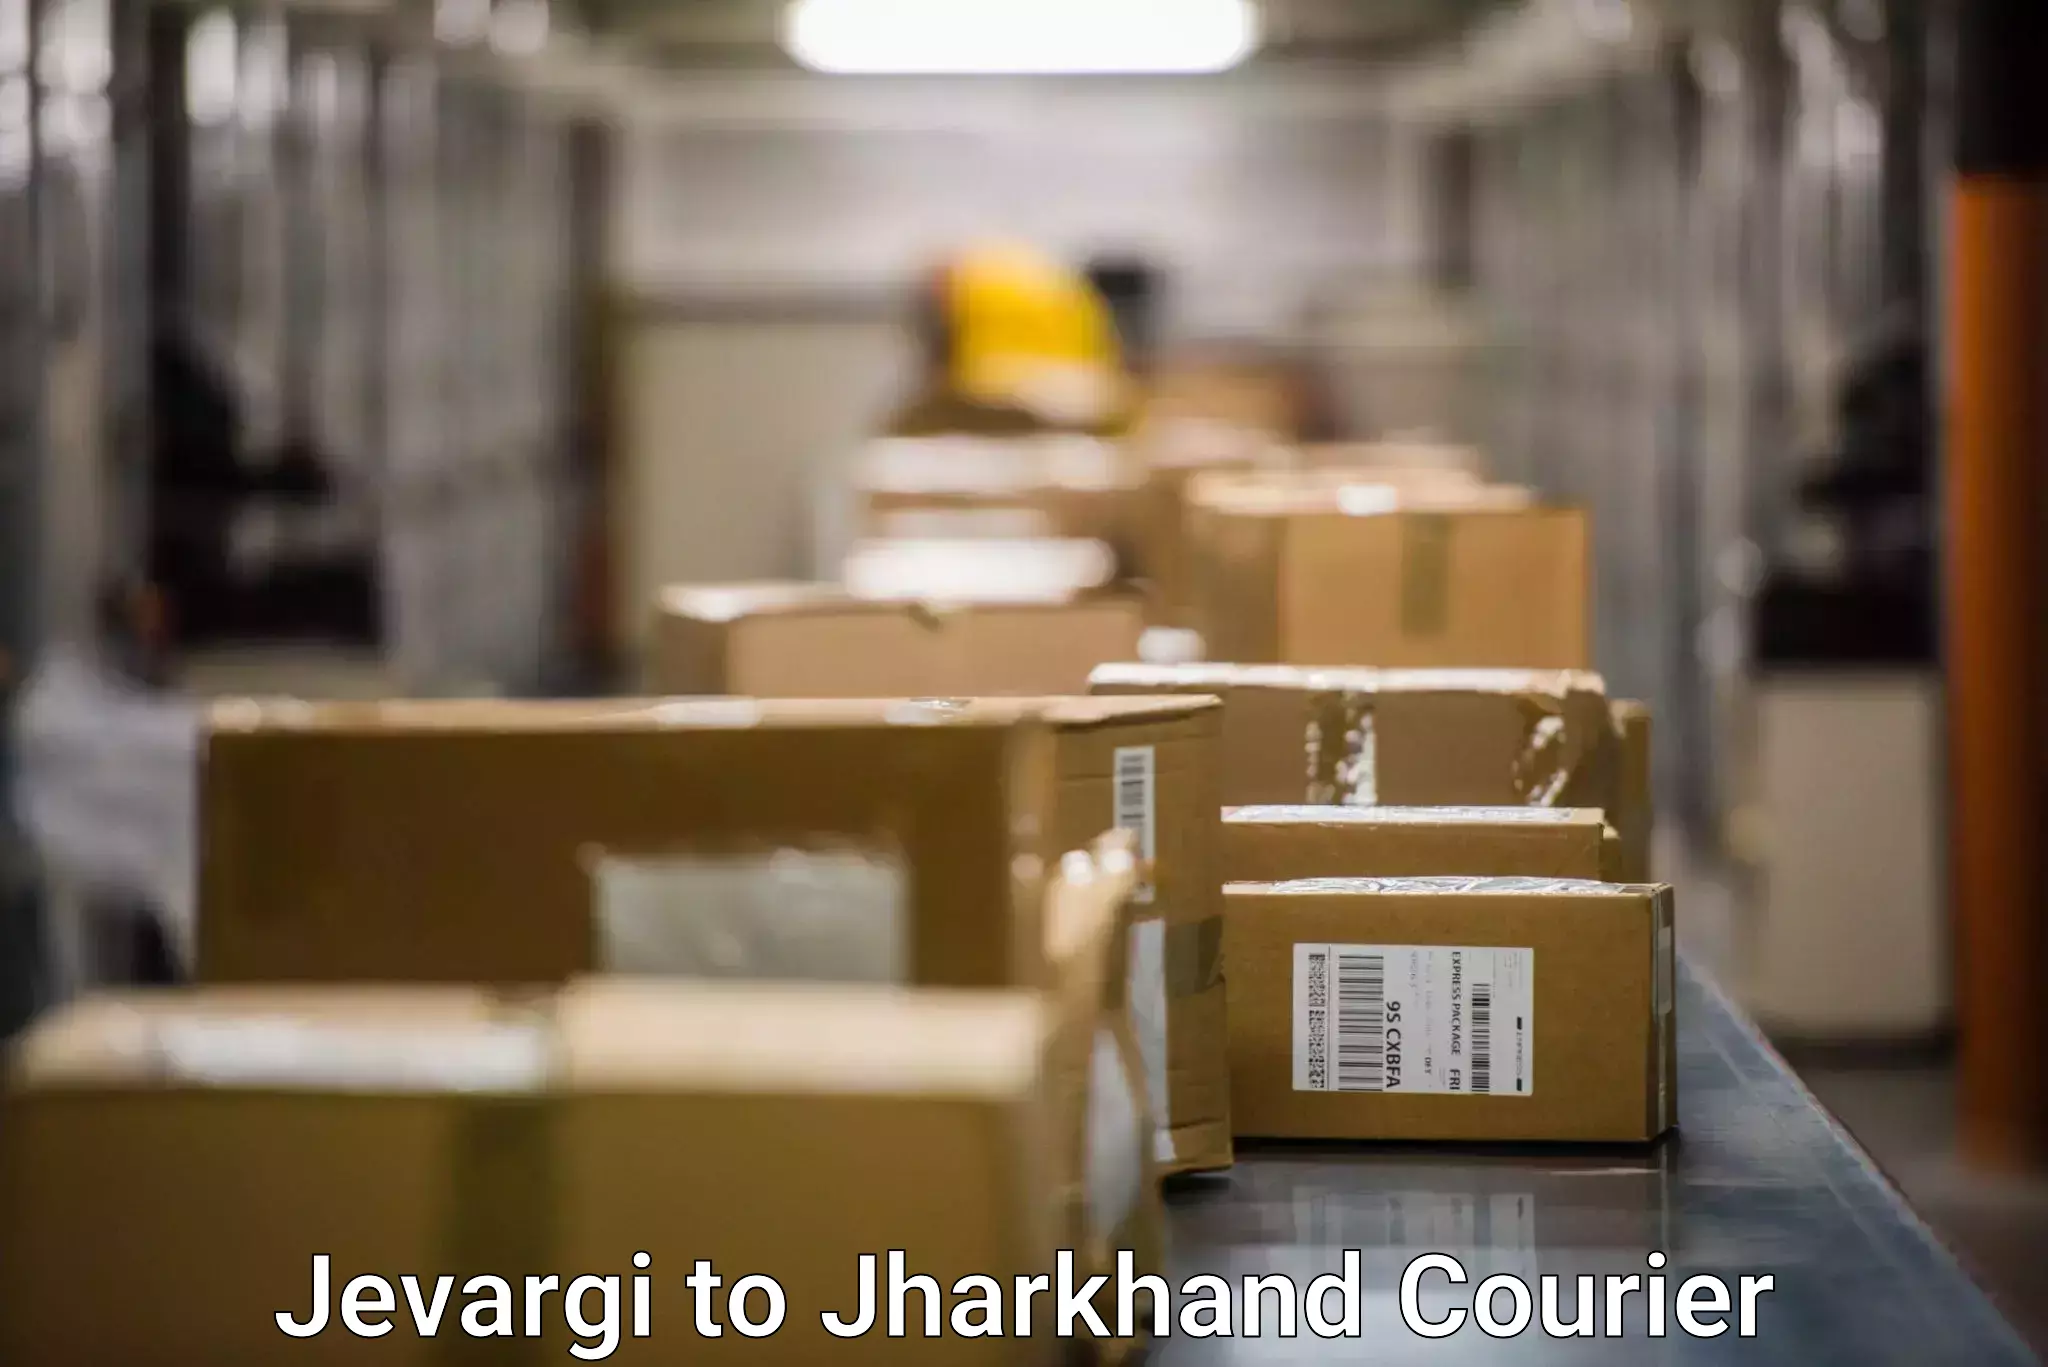 Efficient parcel transport Jevargi to Jamshedpur